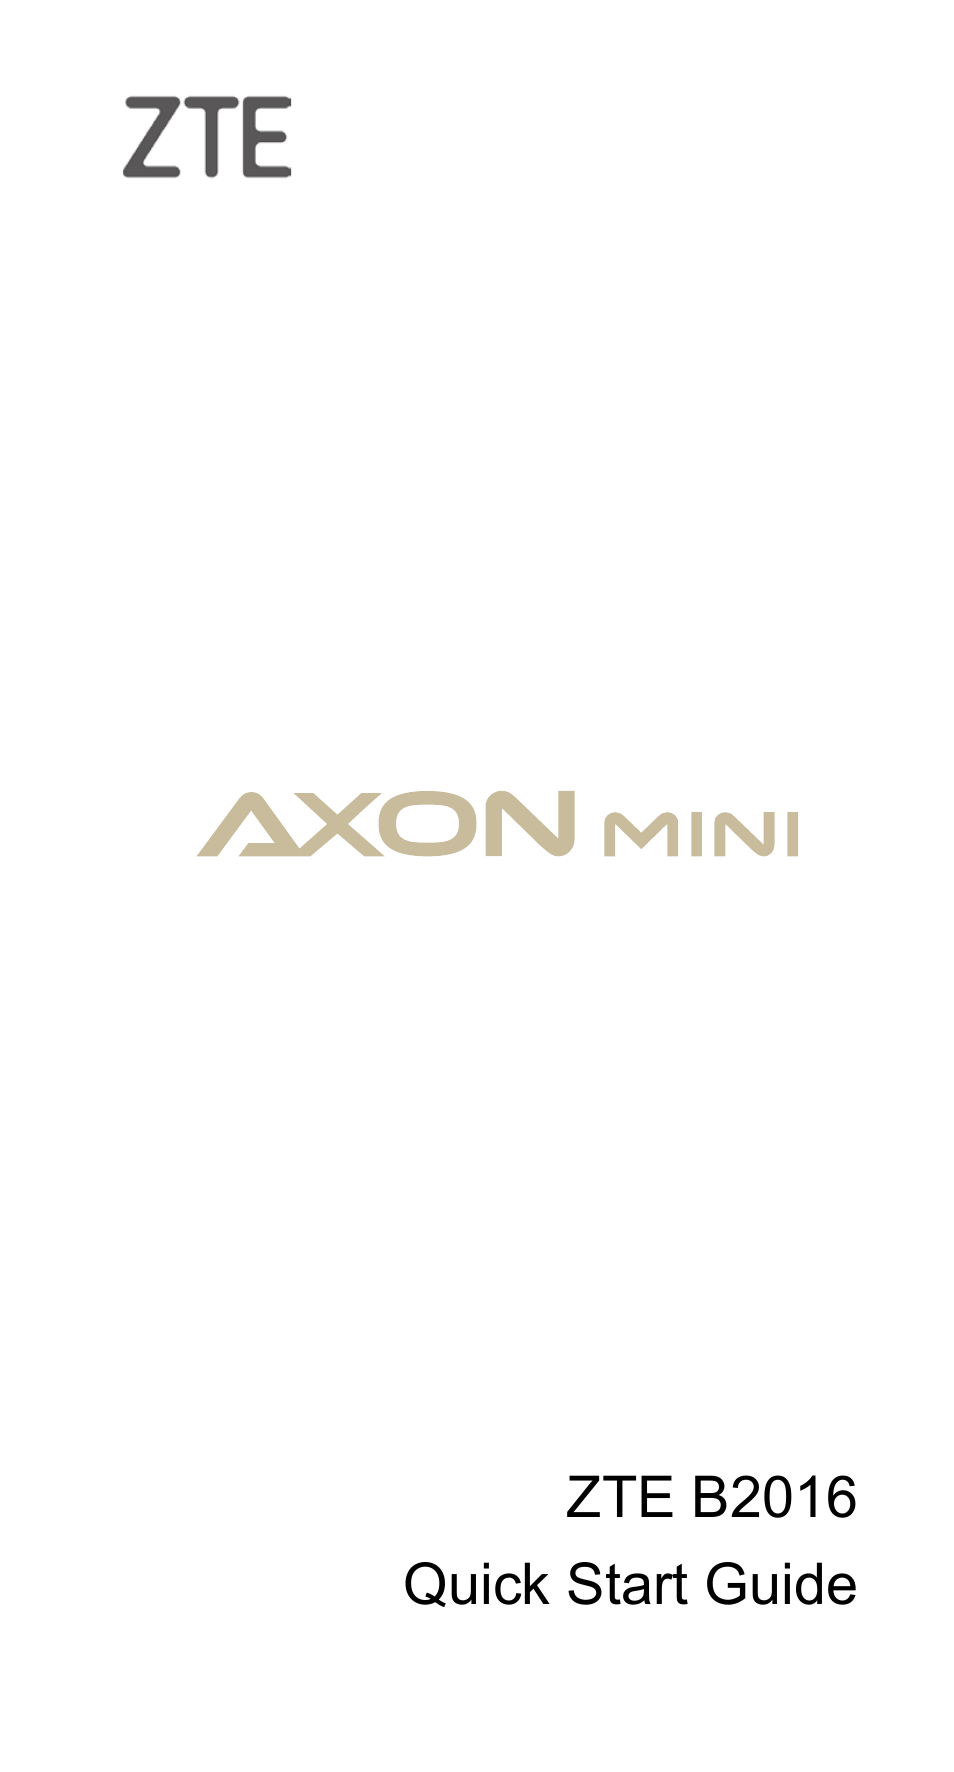 Axon mini